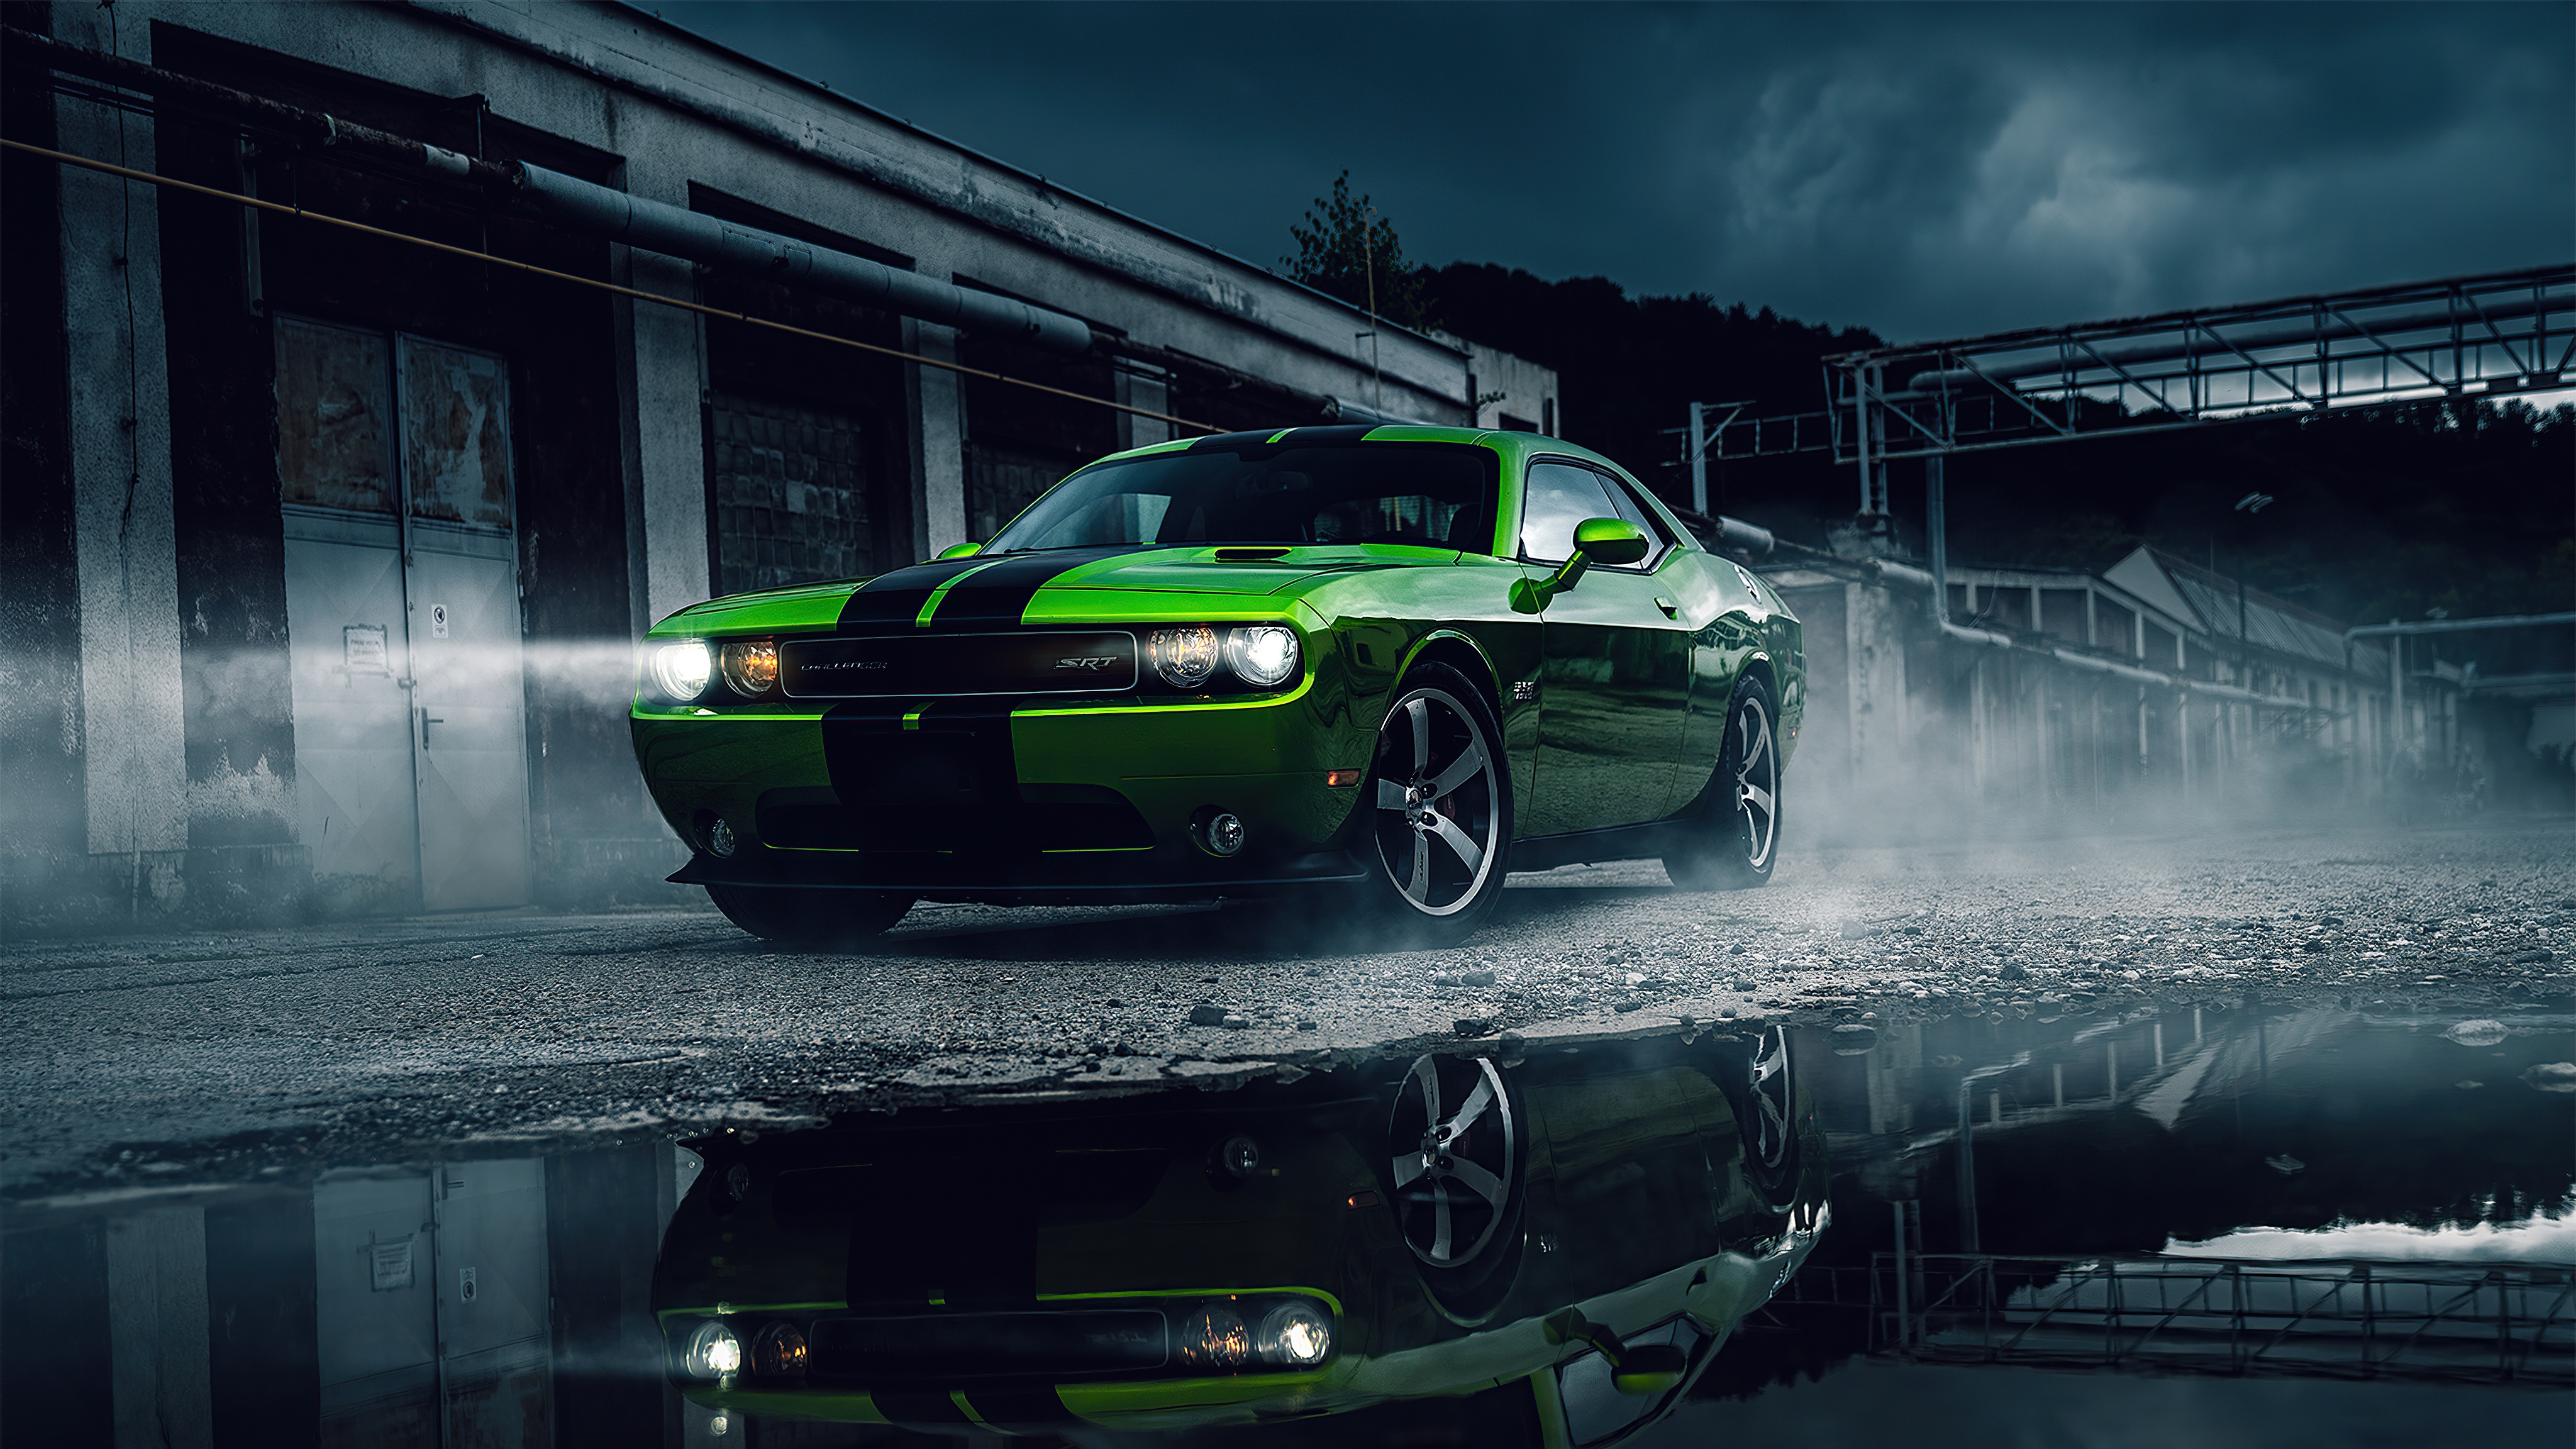 Bạn là fan hâm mộ của những chiếc xe mạnh mẽ và đầy phong cách? Bức hình về chiếc xế hộp Dodge Challenger màu xanh đang chào đón bạn đến với một trải nghiệm đầy thú vị về tốc độ và sự mạnh mẽ.